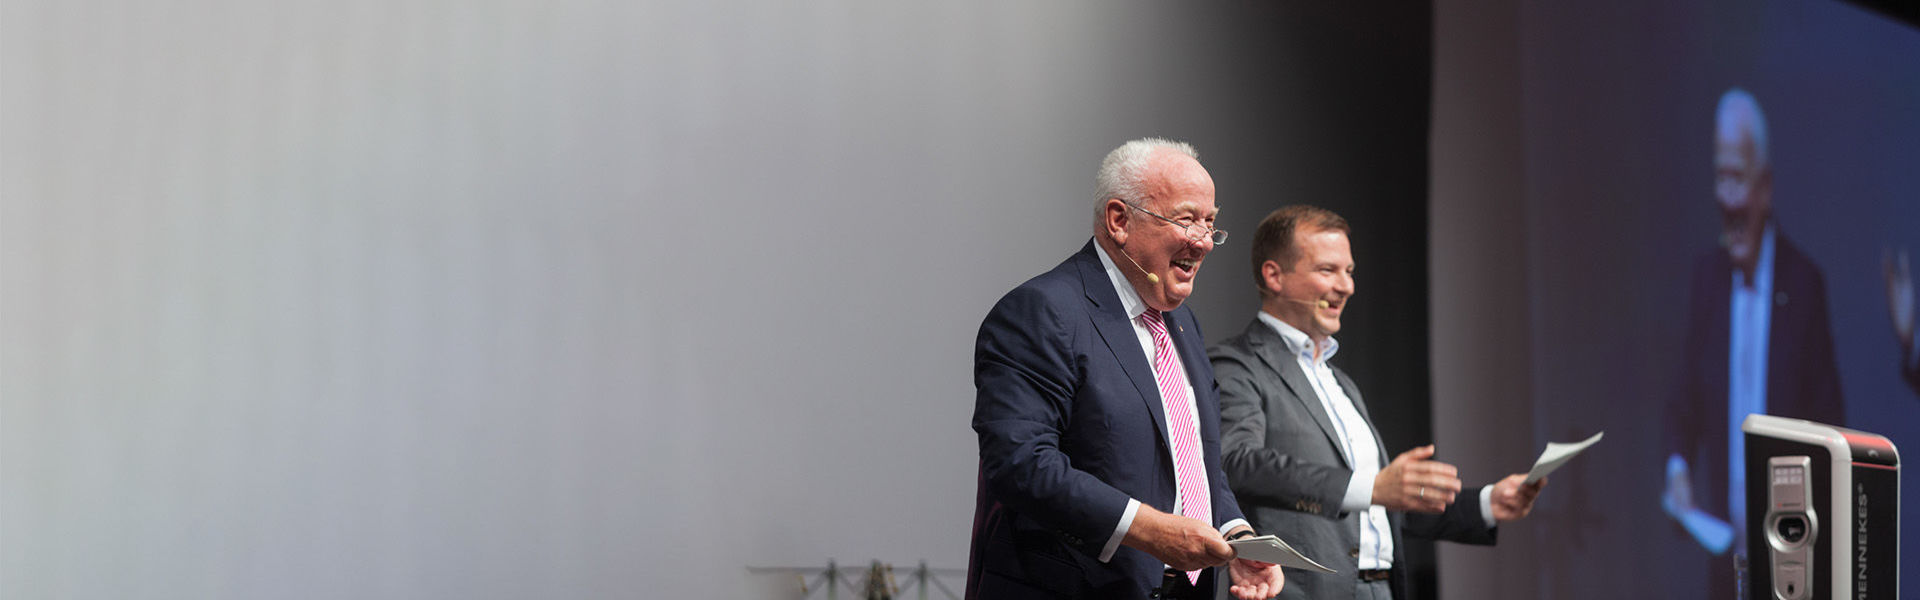 Zwei Männer stehen auf einem Podium und sprechen lächelnd zum Publikum